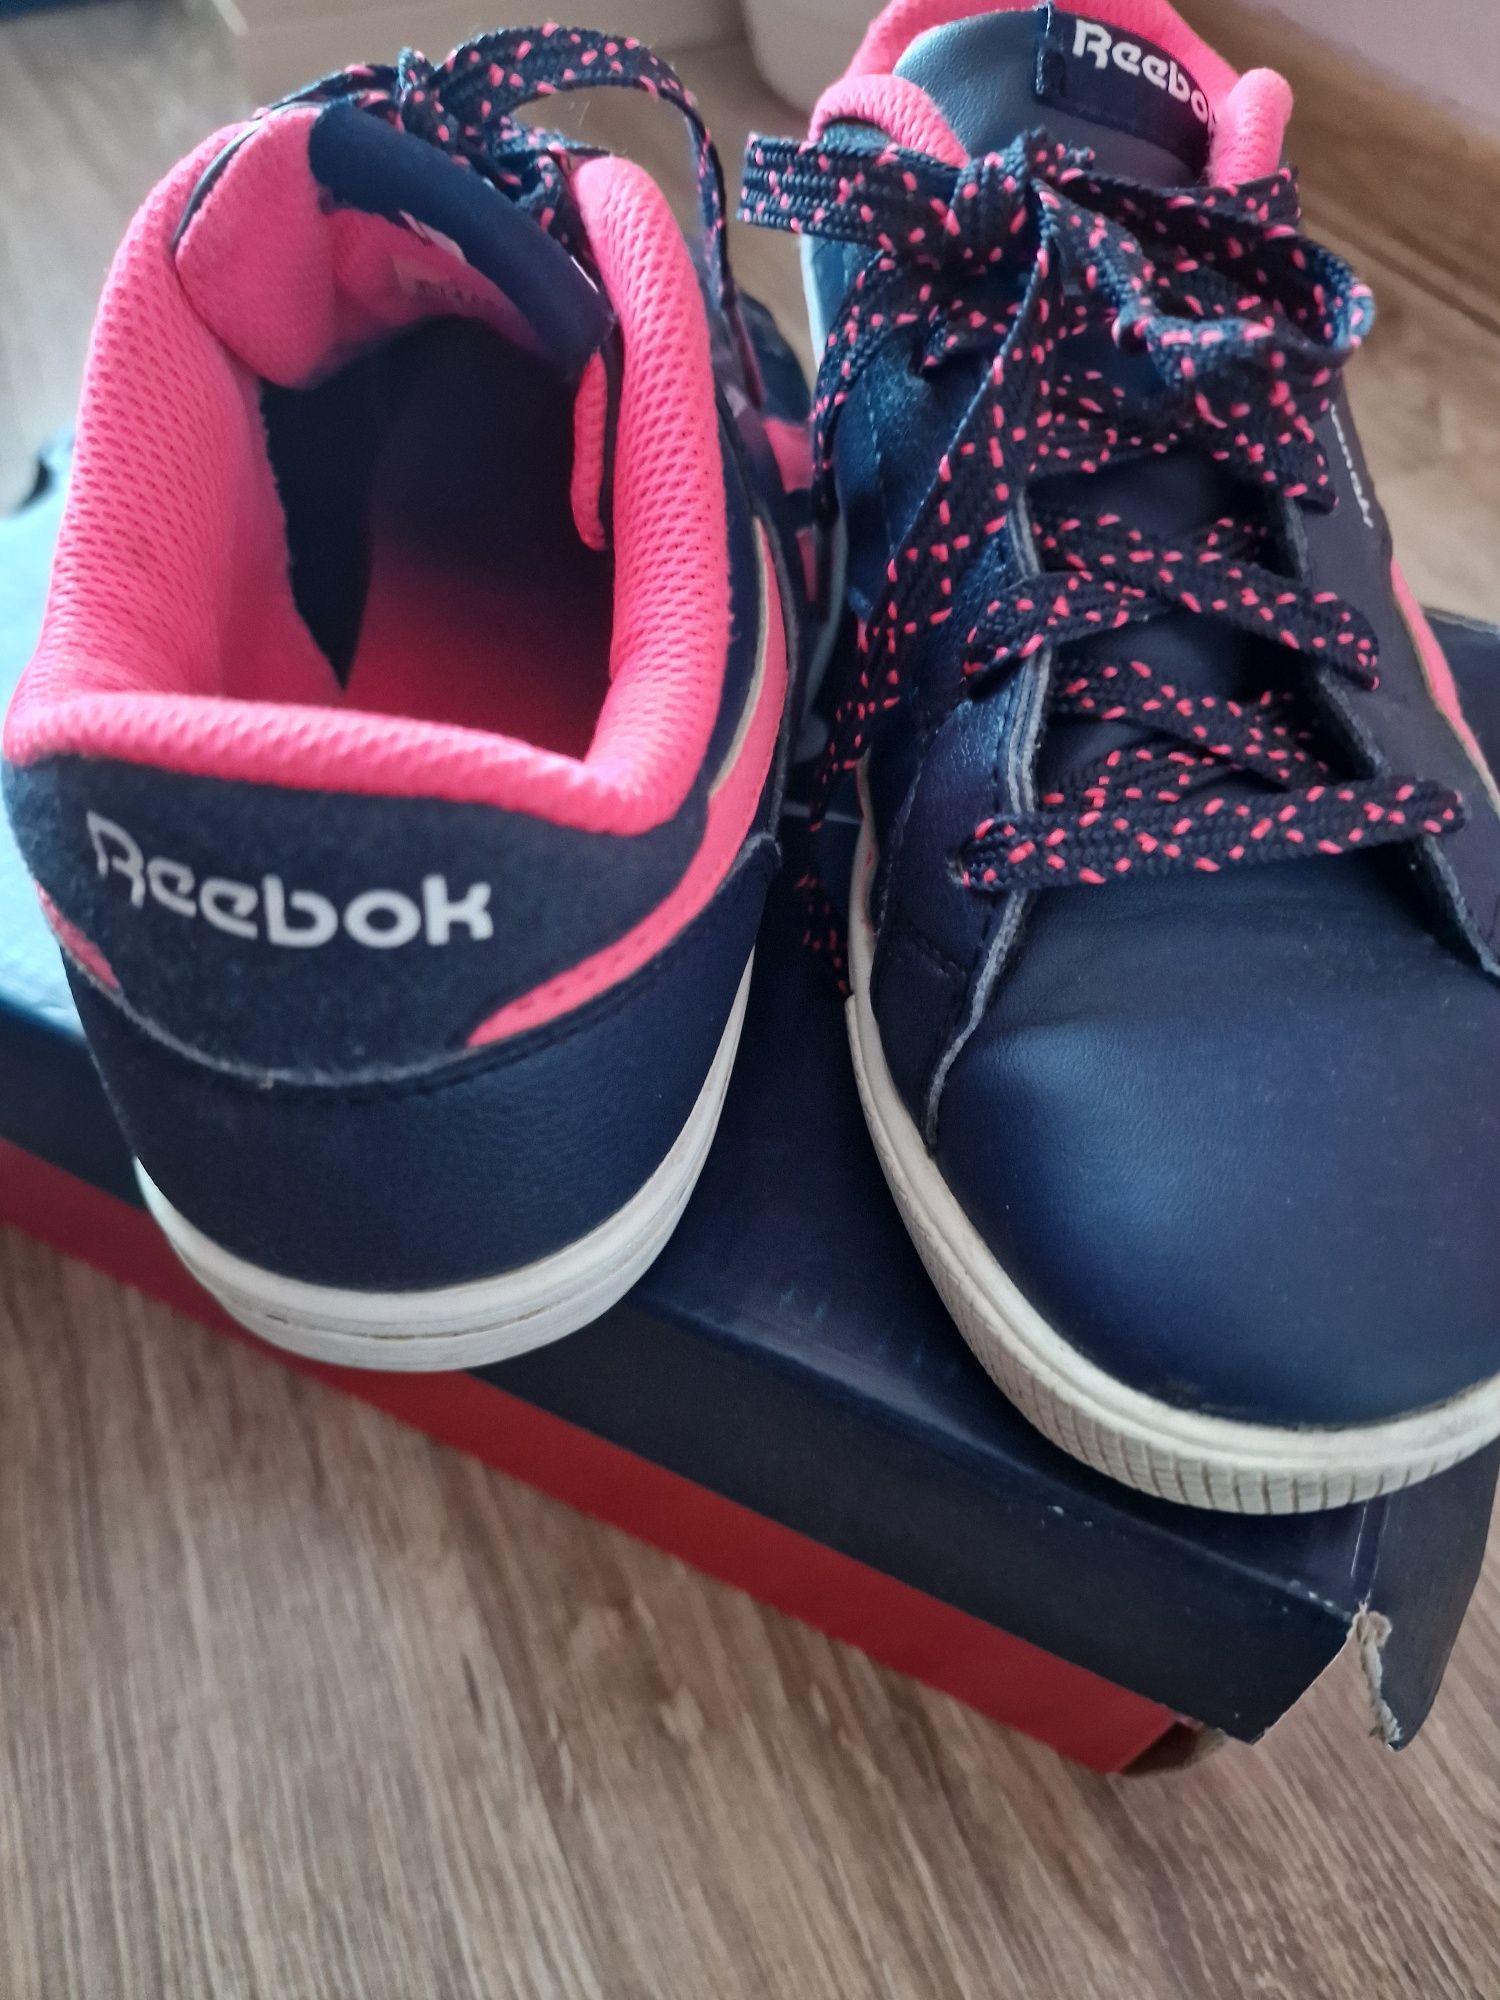 Adidasy firmy Reebok  rozmiar 36. Długość wkładki 23 cm.